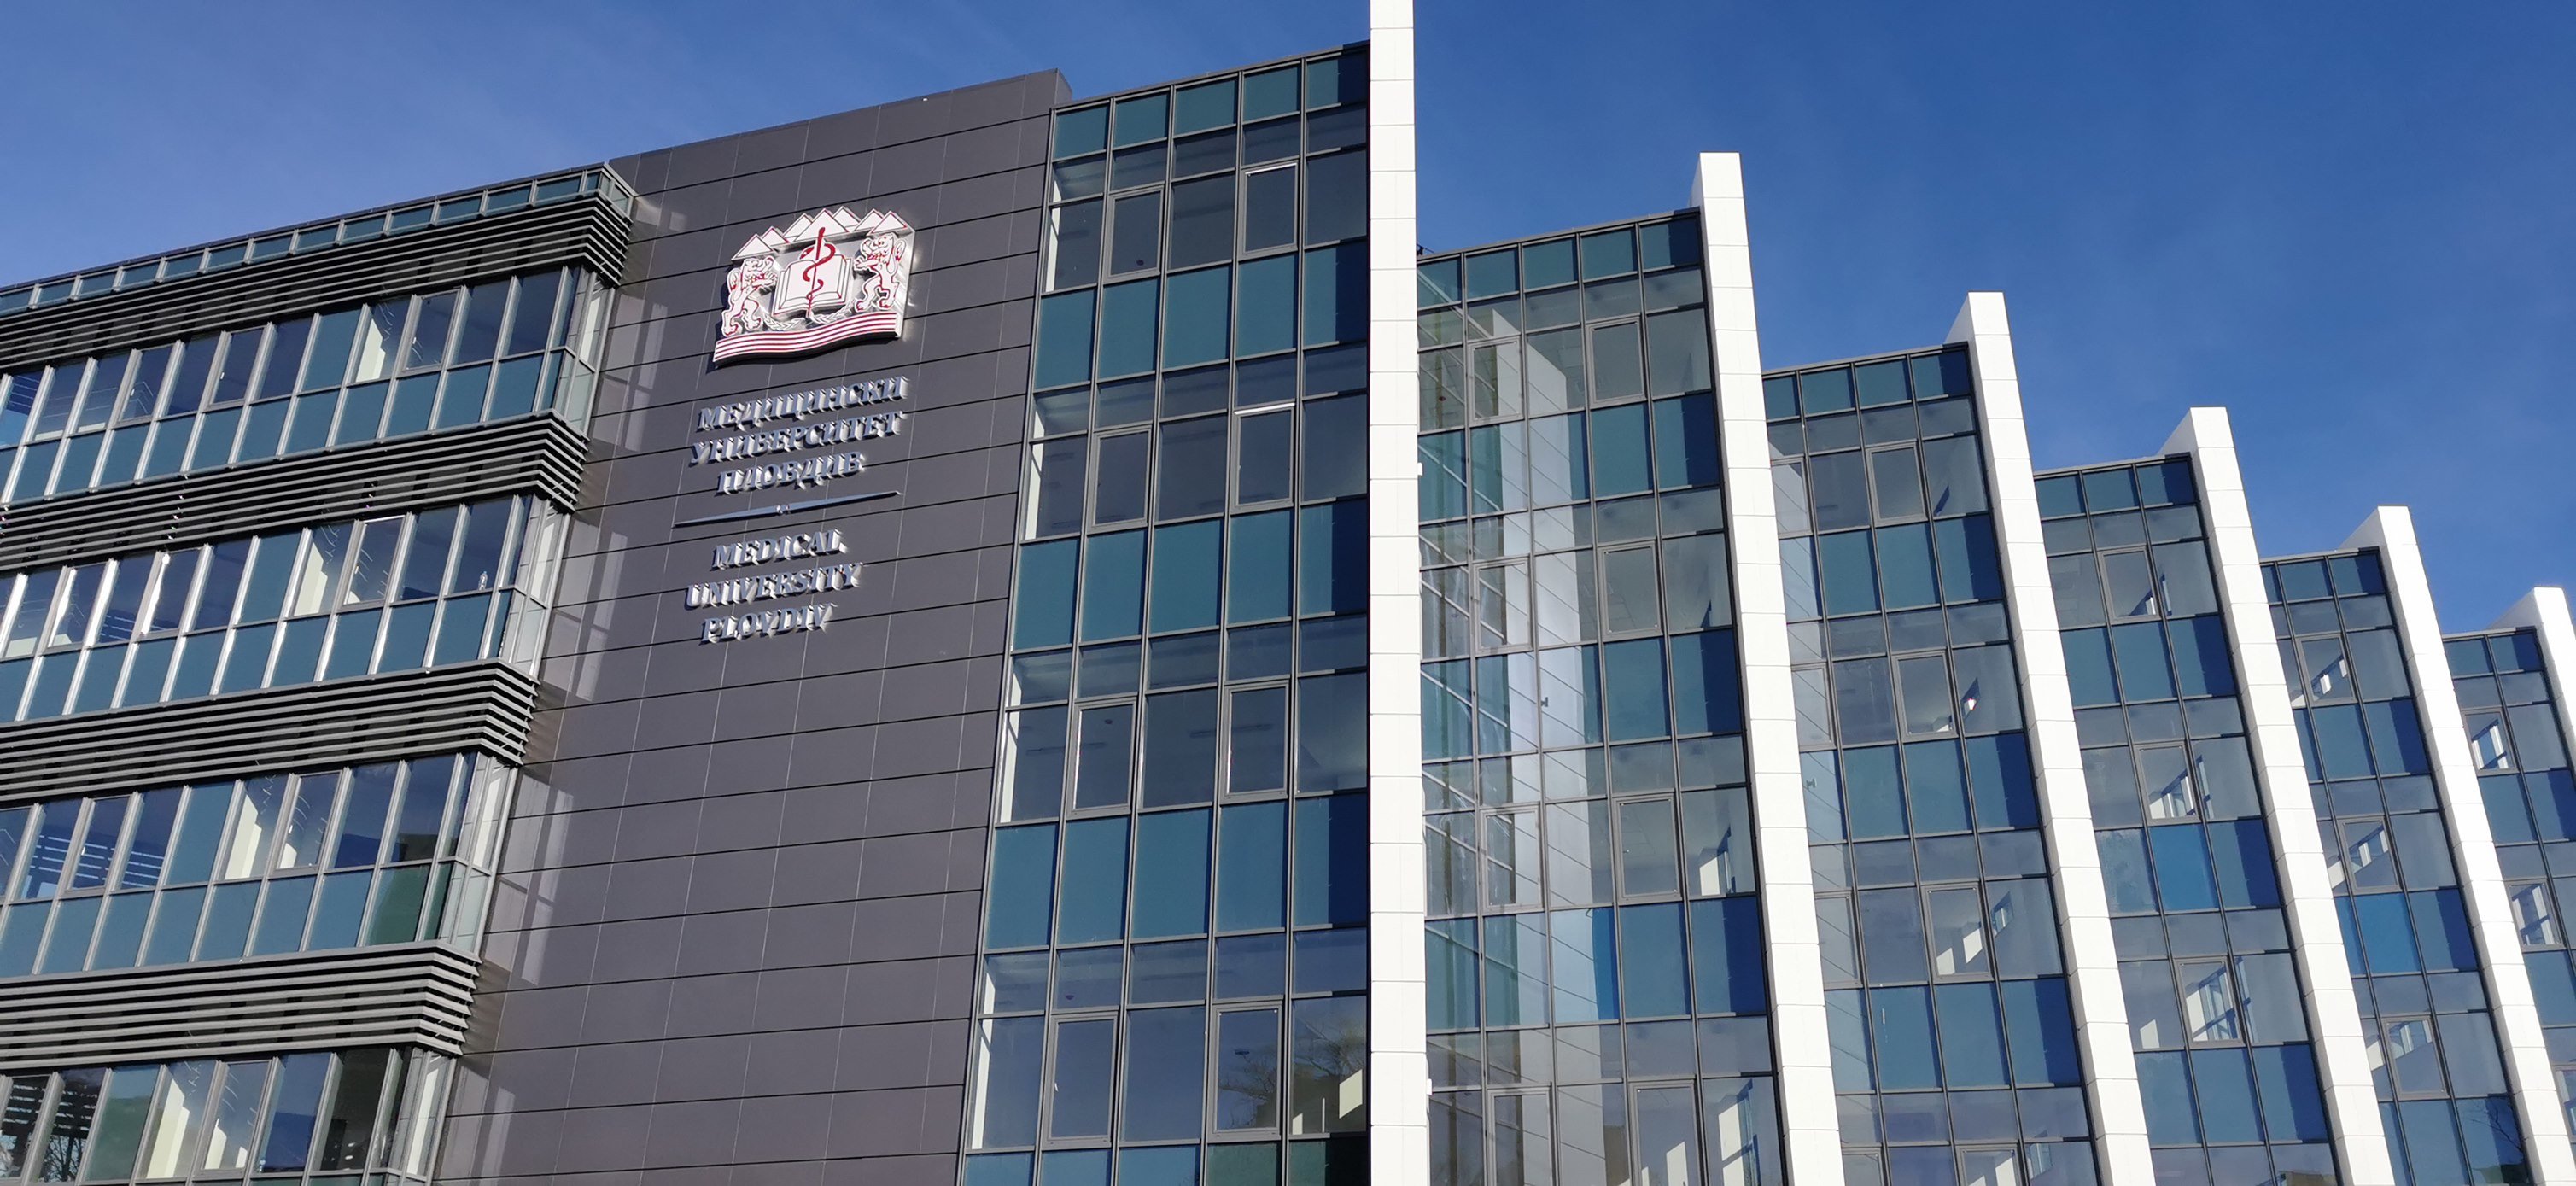 Медицинският университет в Пловдив започва строежа на нова административна сграда